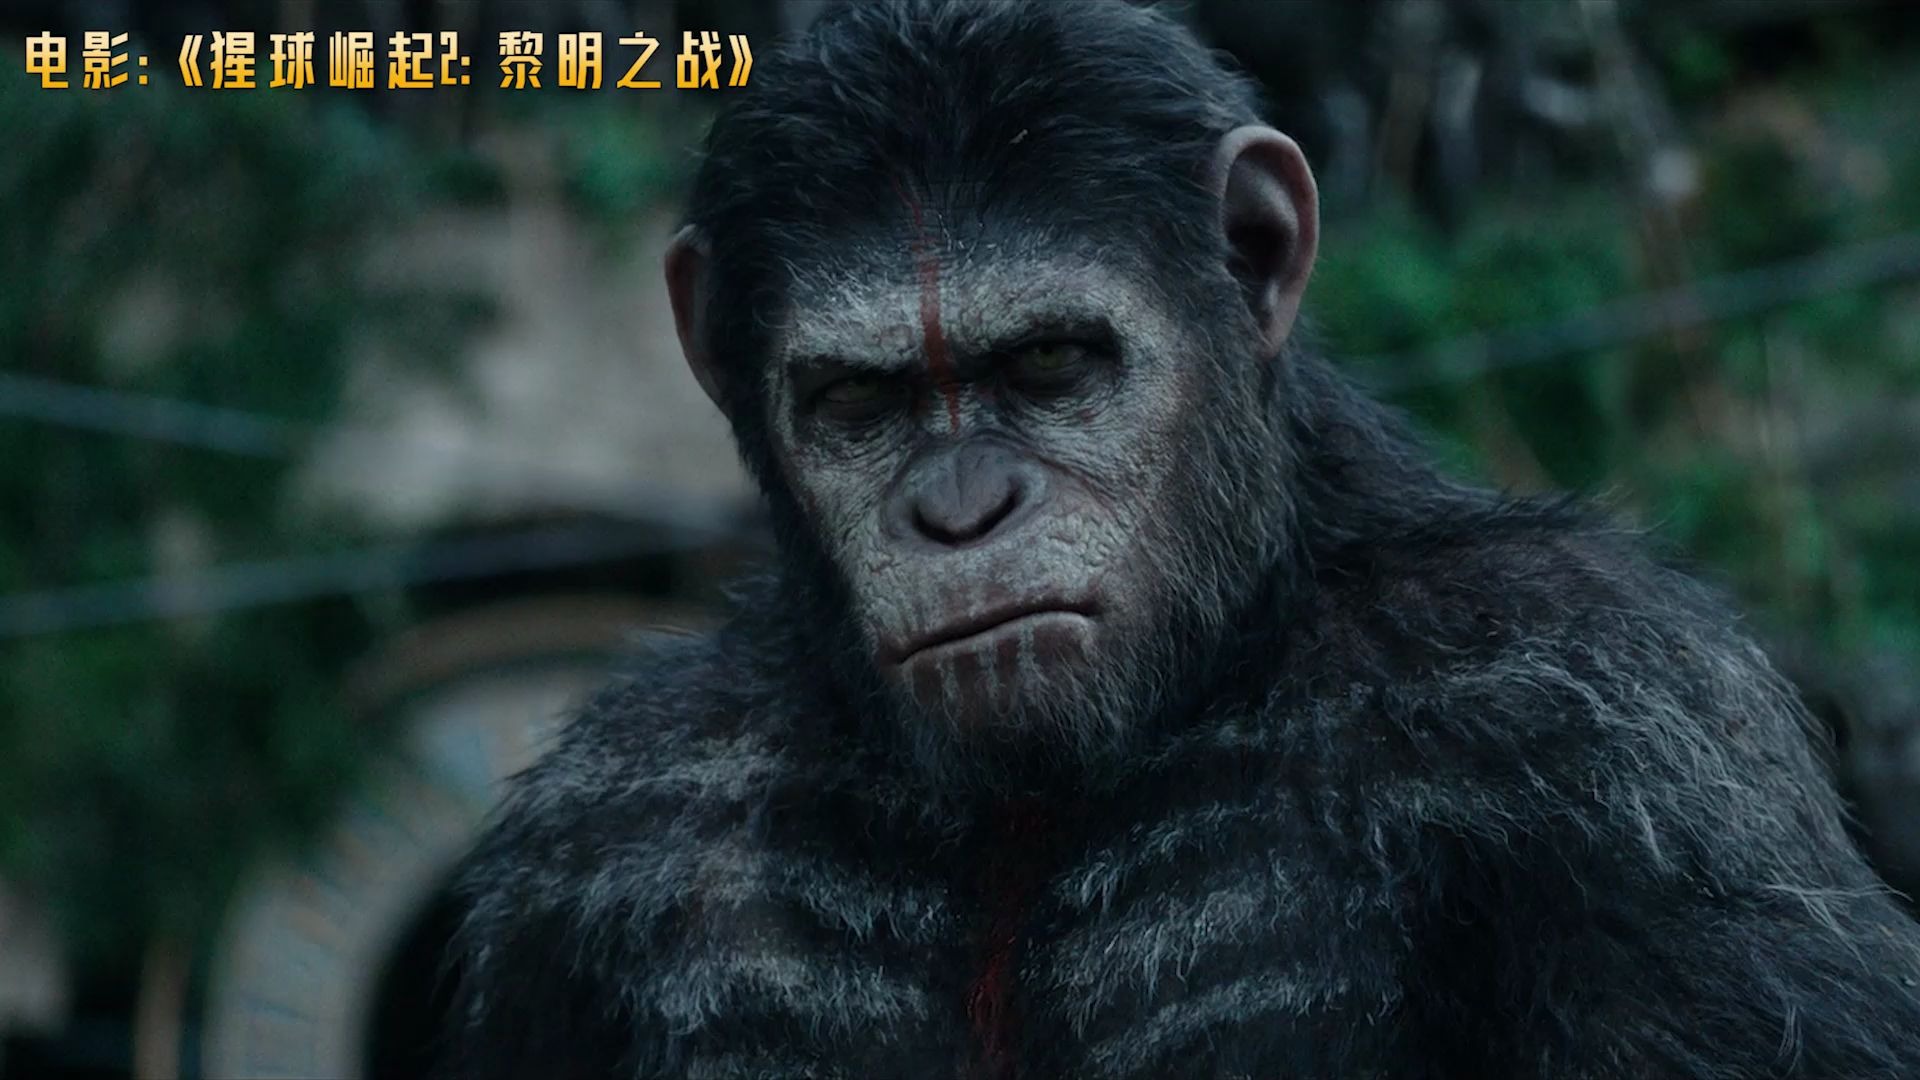 《猩球崛起2:黎明之战》:有智慧的猿类和人类能够和平共处吗?